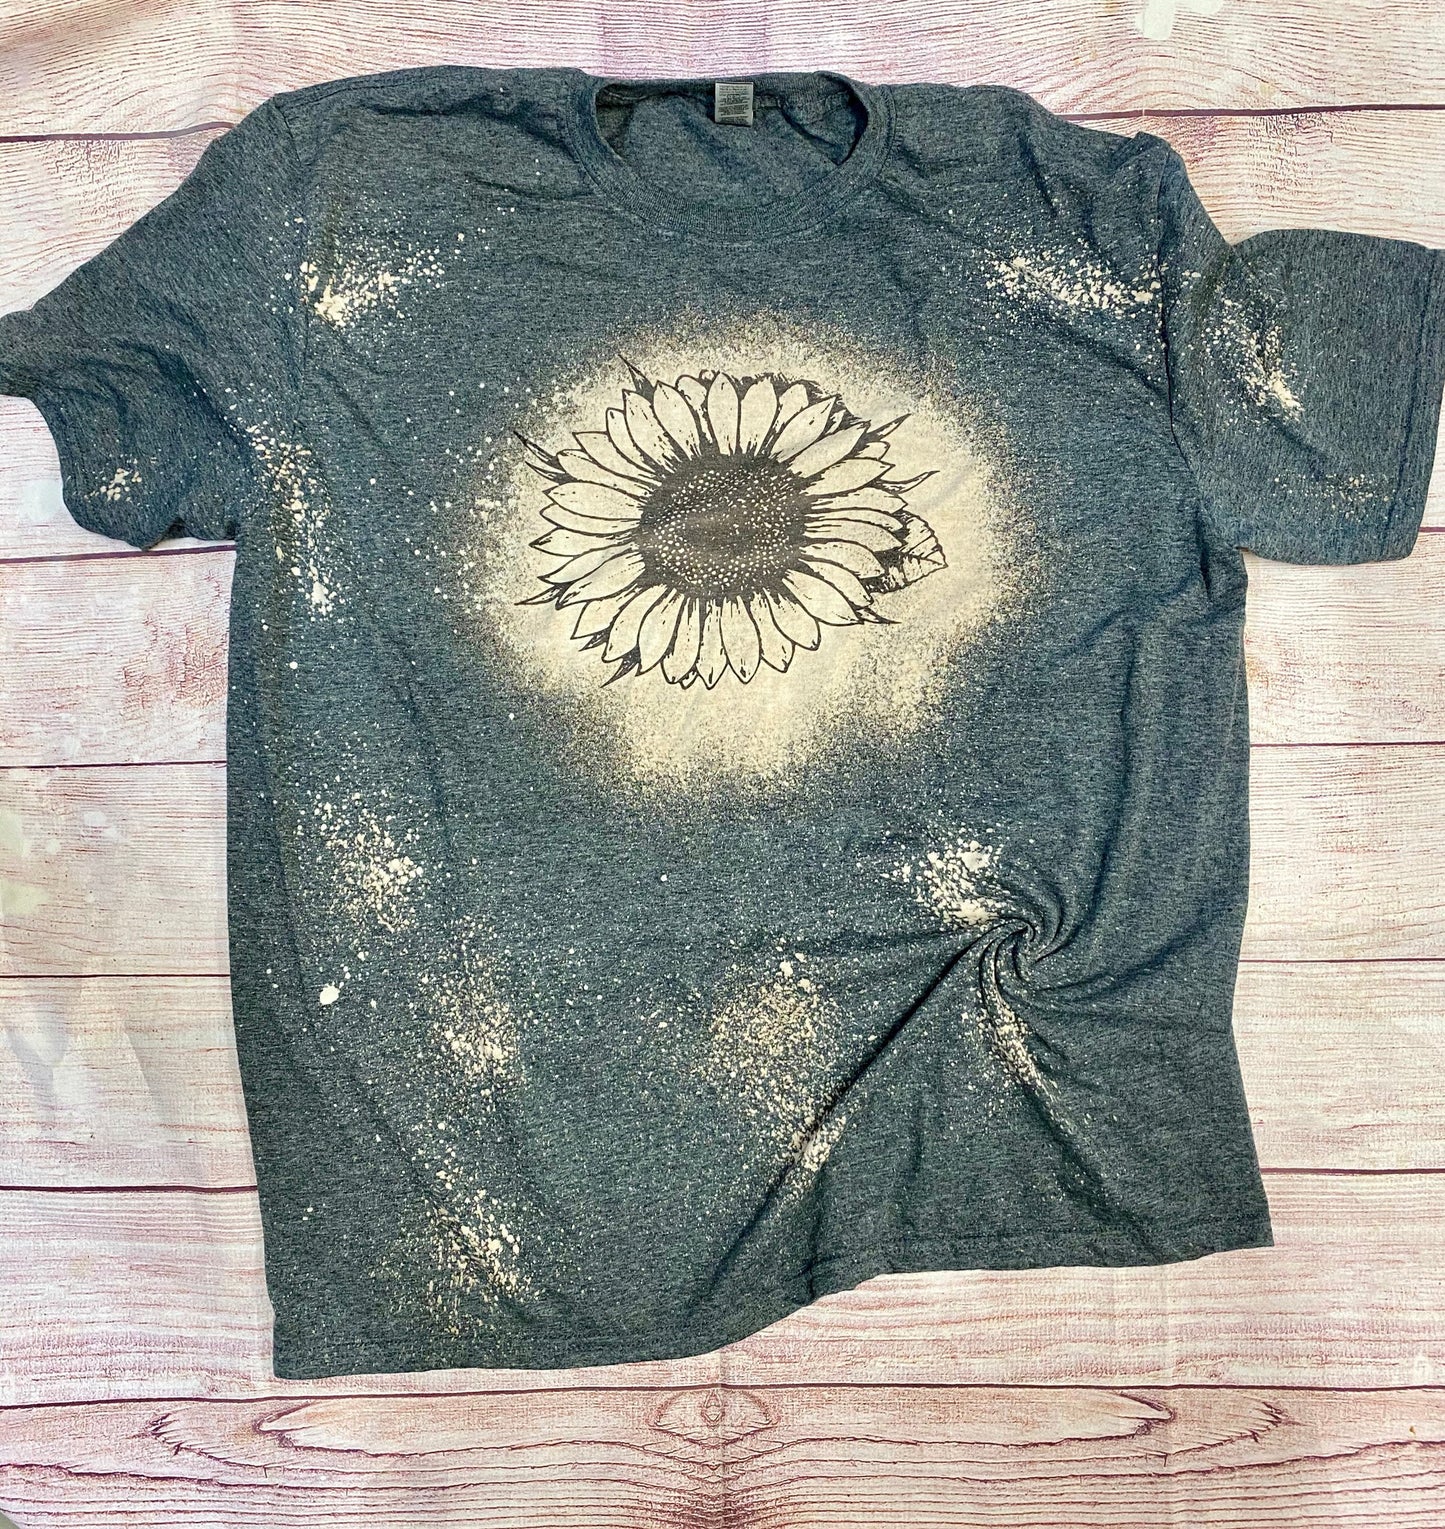 Sunflower Bleach Shirt | Bleach Tee | Bleach Shirt | Bleached Shirt